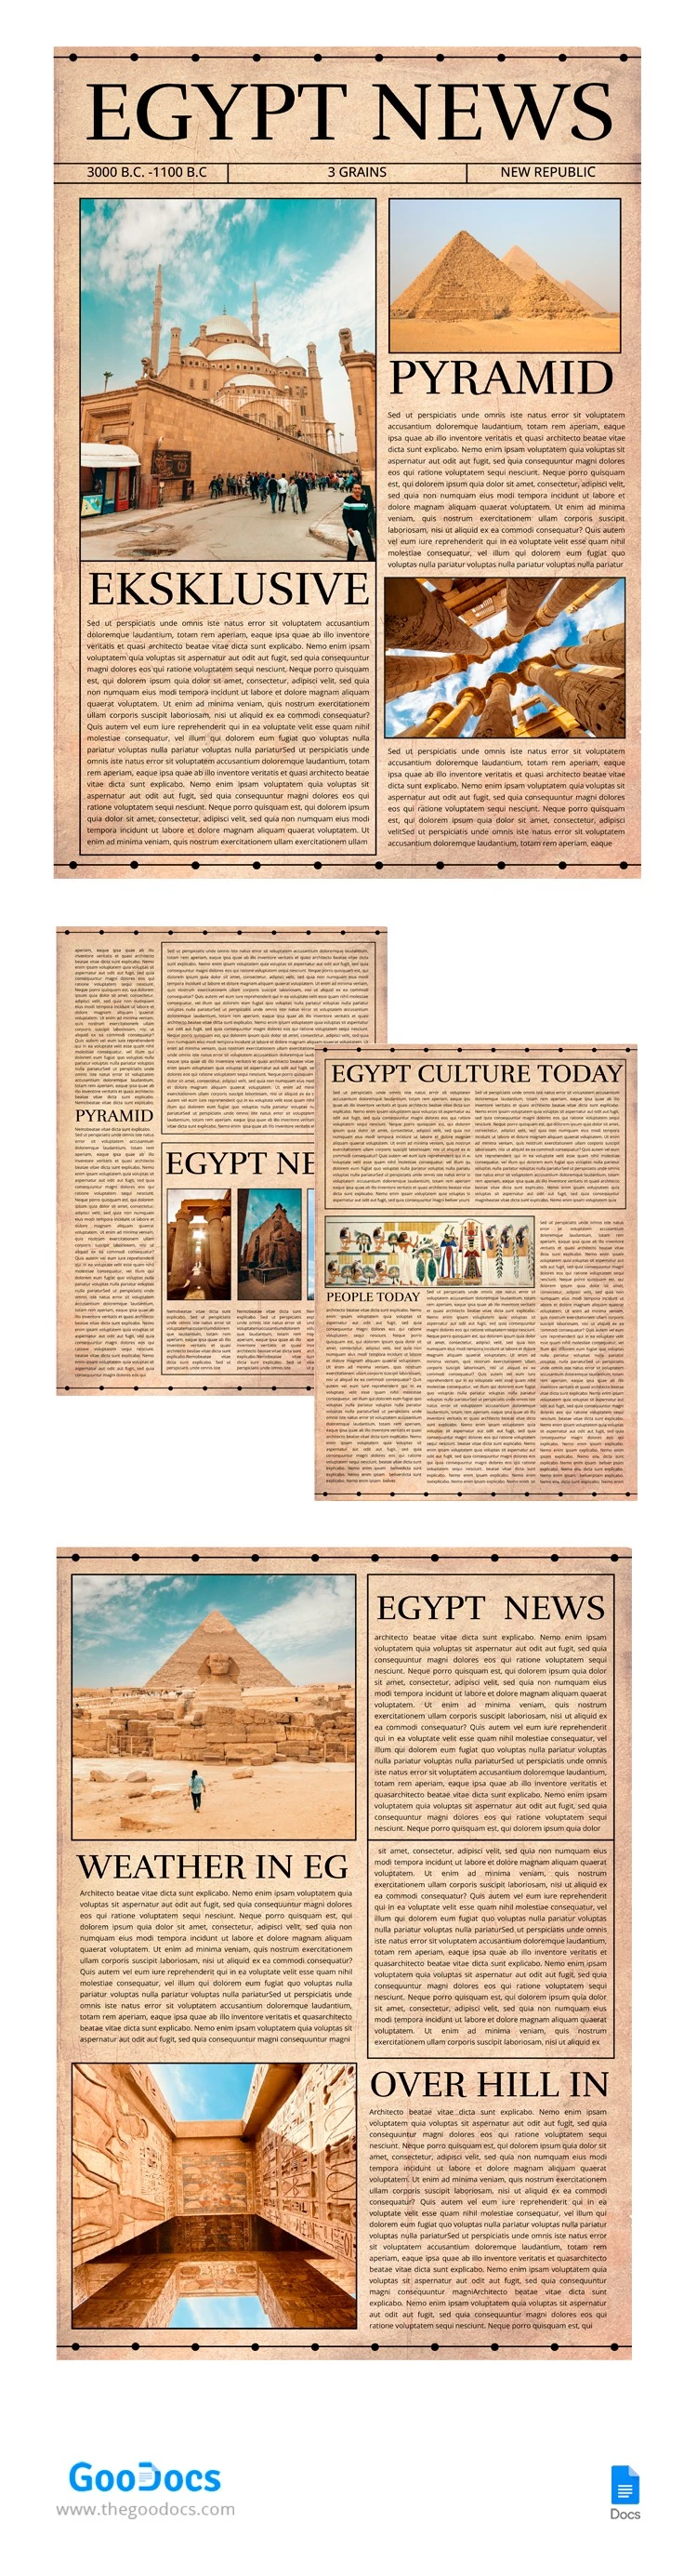 Jornal do Egito - free Google Docs Template - 10065740